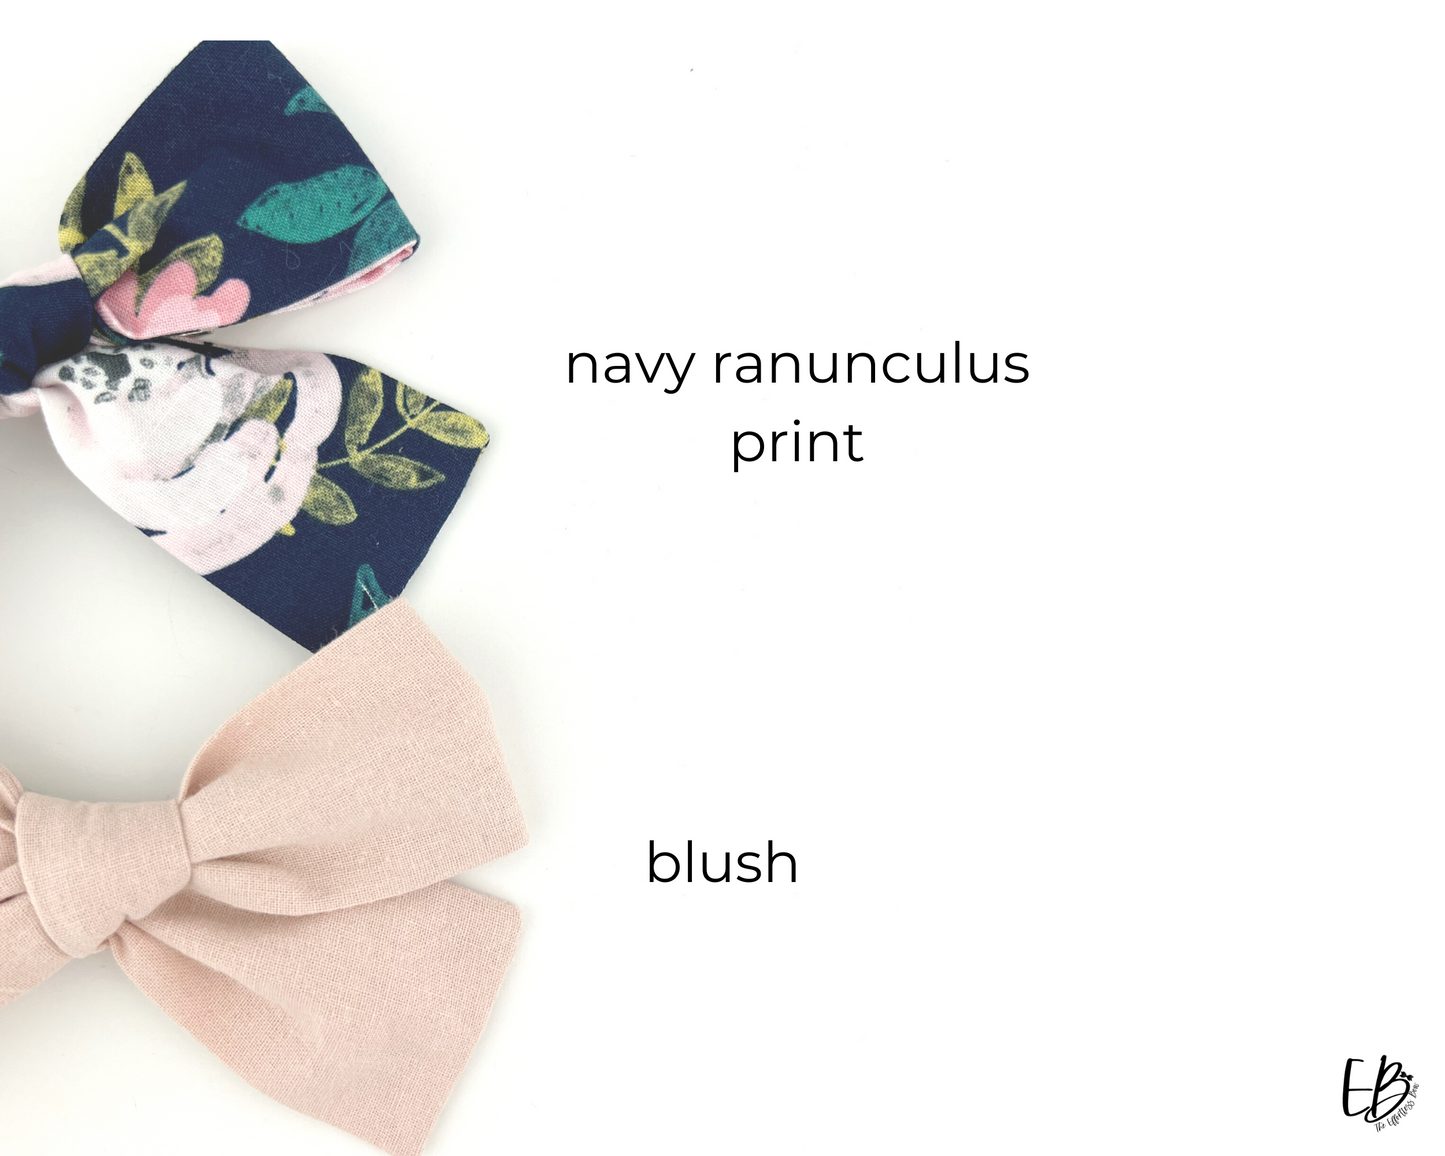 Navy & Blush Ranunculus Hair Bow